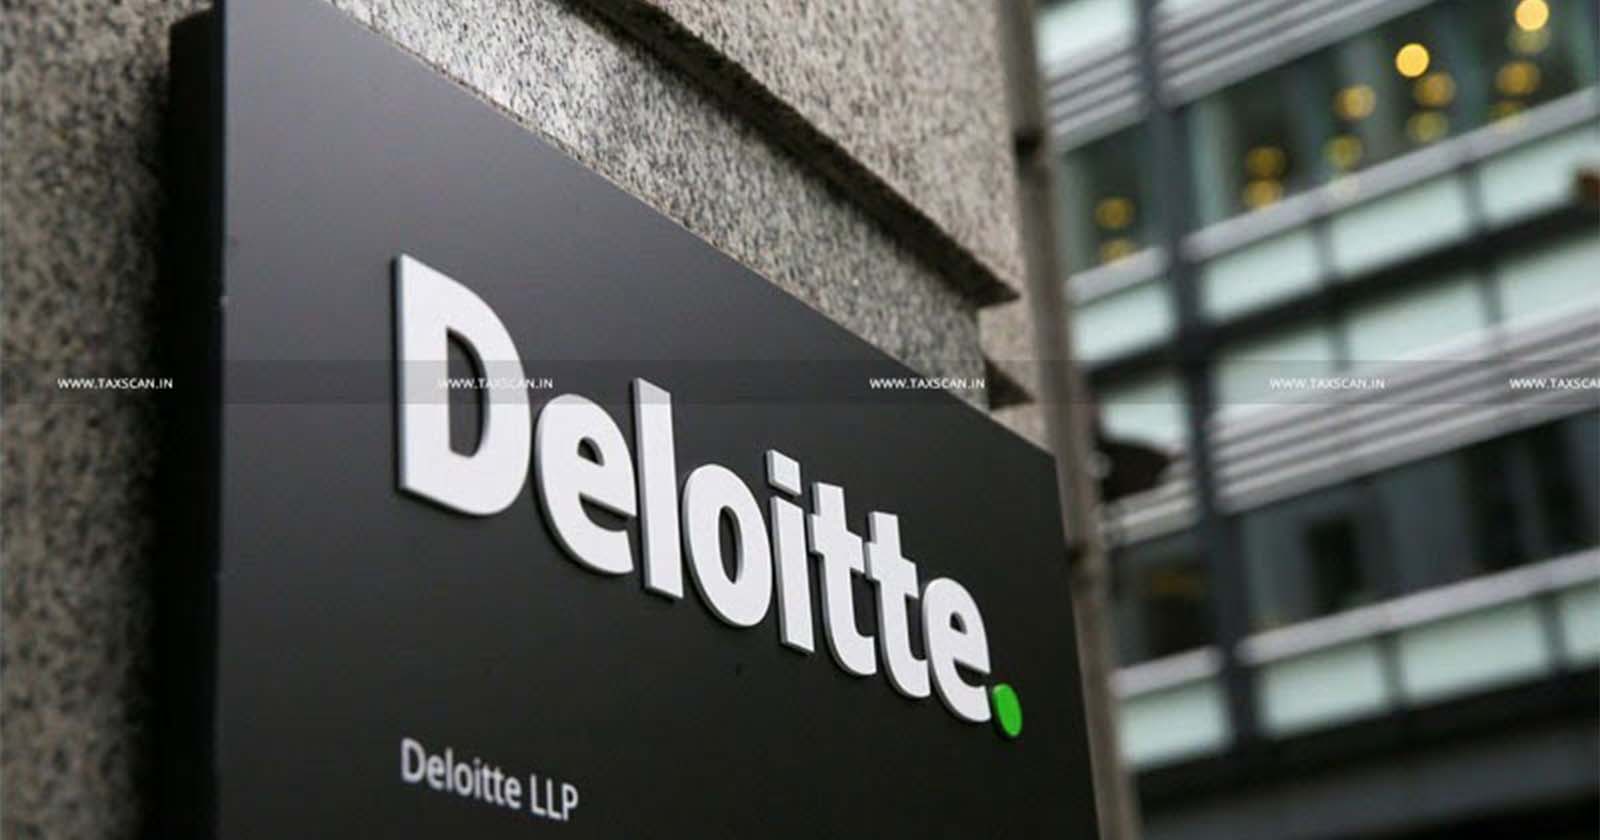 B.com - MBA - Vacancy in Deloitte - jobscan